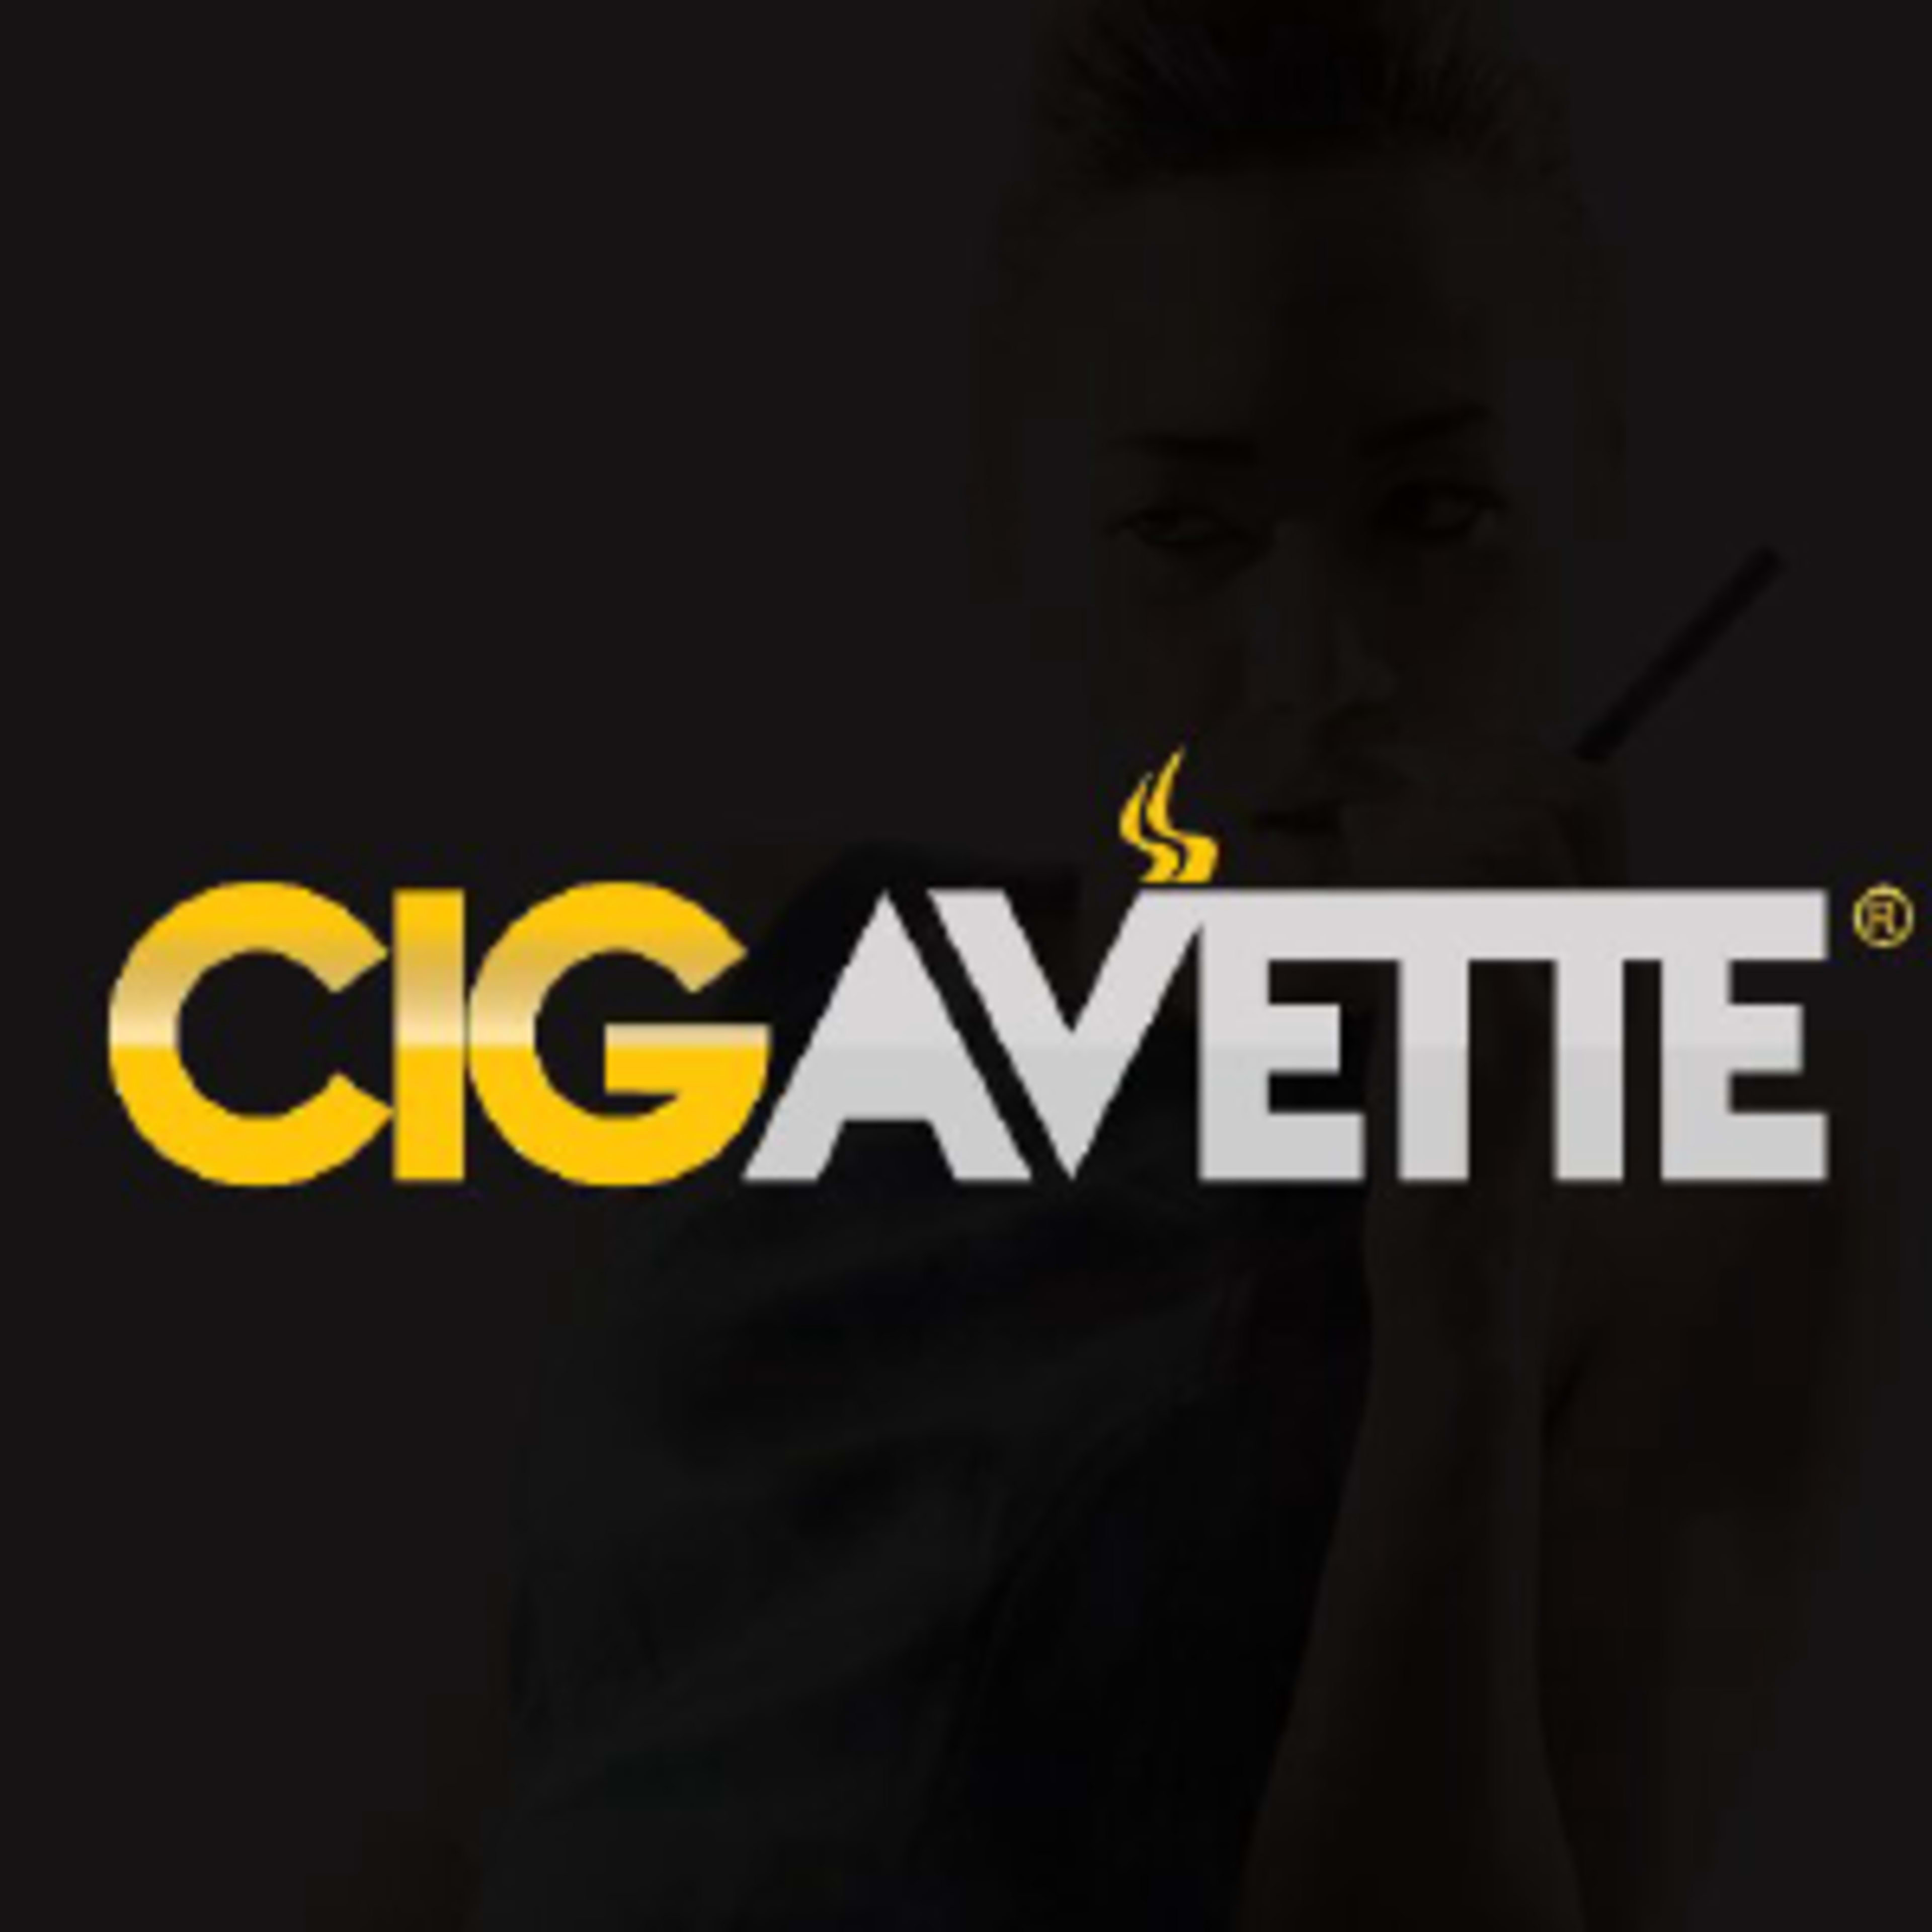 Cigavette.com Code